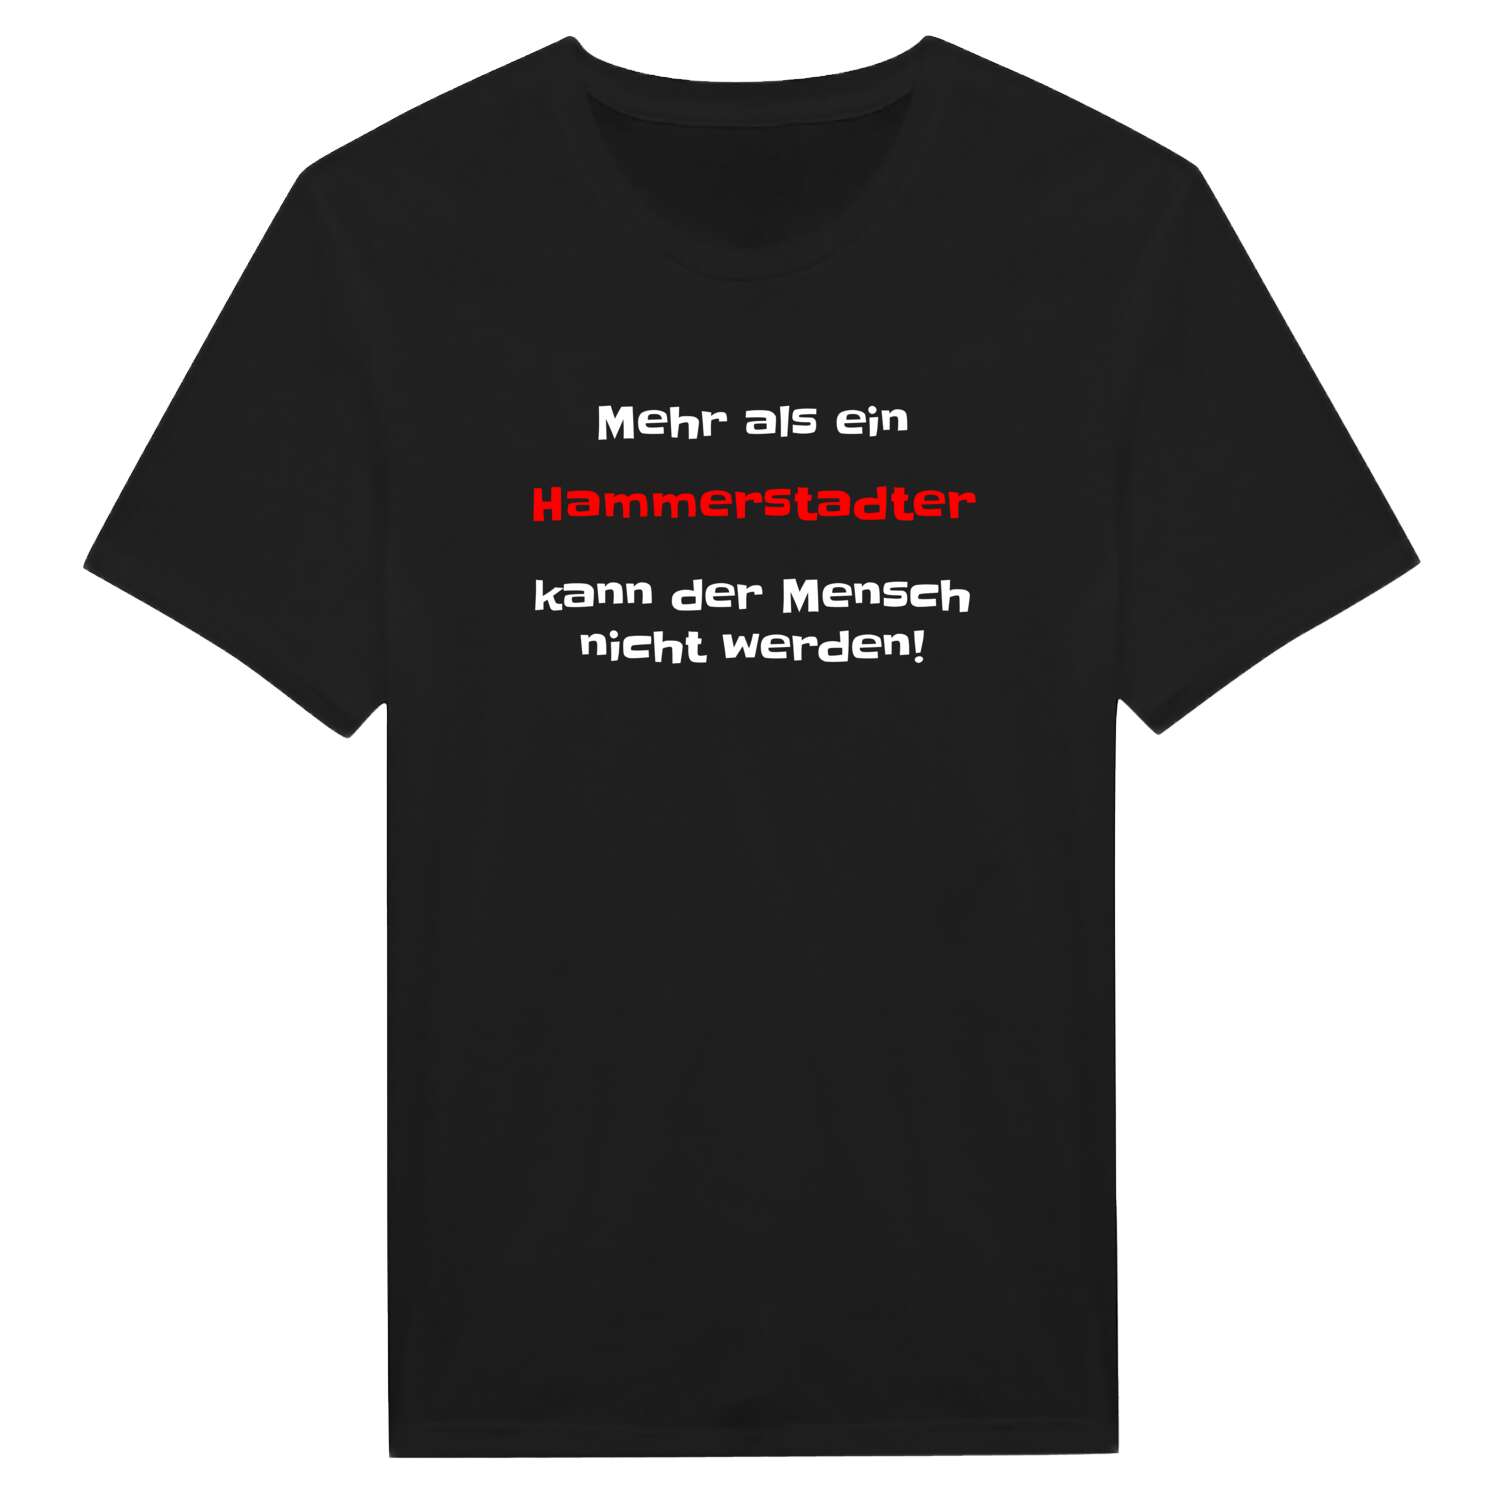 Hammerstadt T-Shirt »Mehr als ein«